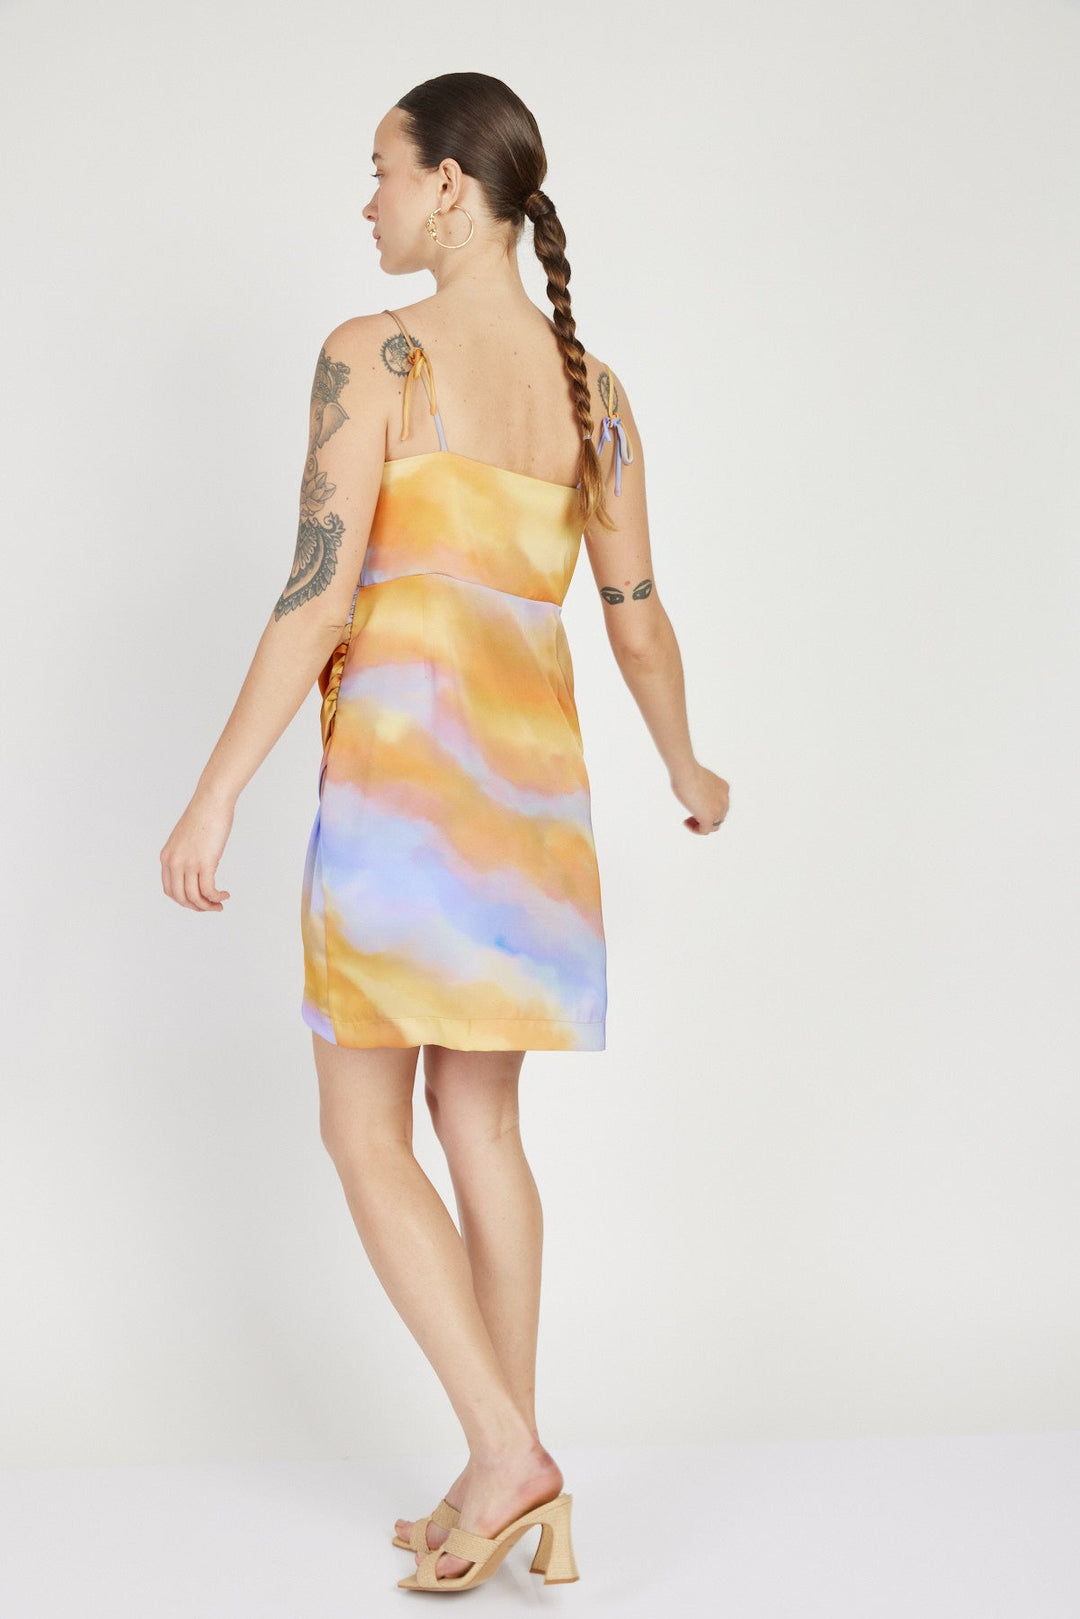 שמלת מיני מעטפת צוף בהדפס צבעוני - House Of Jaffa X Razili